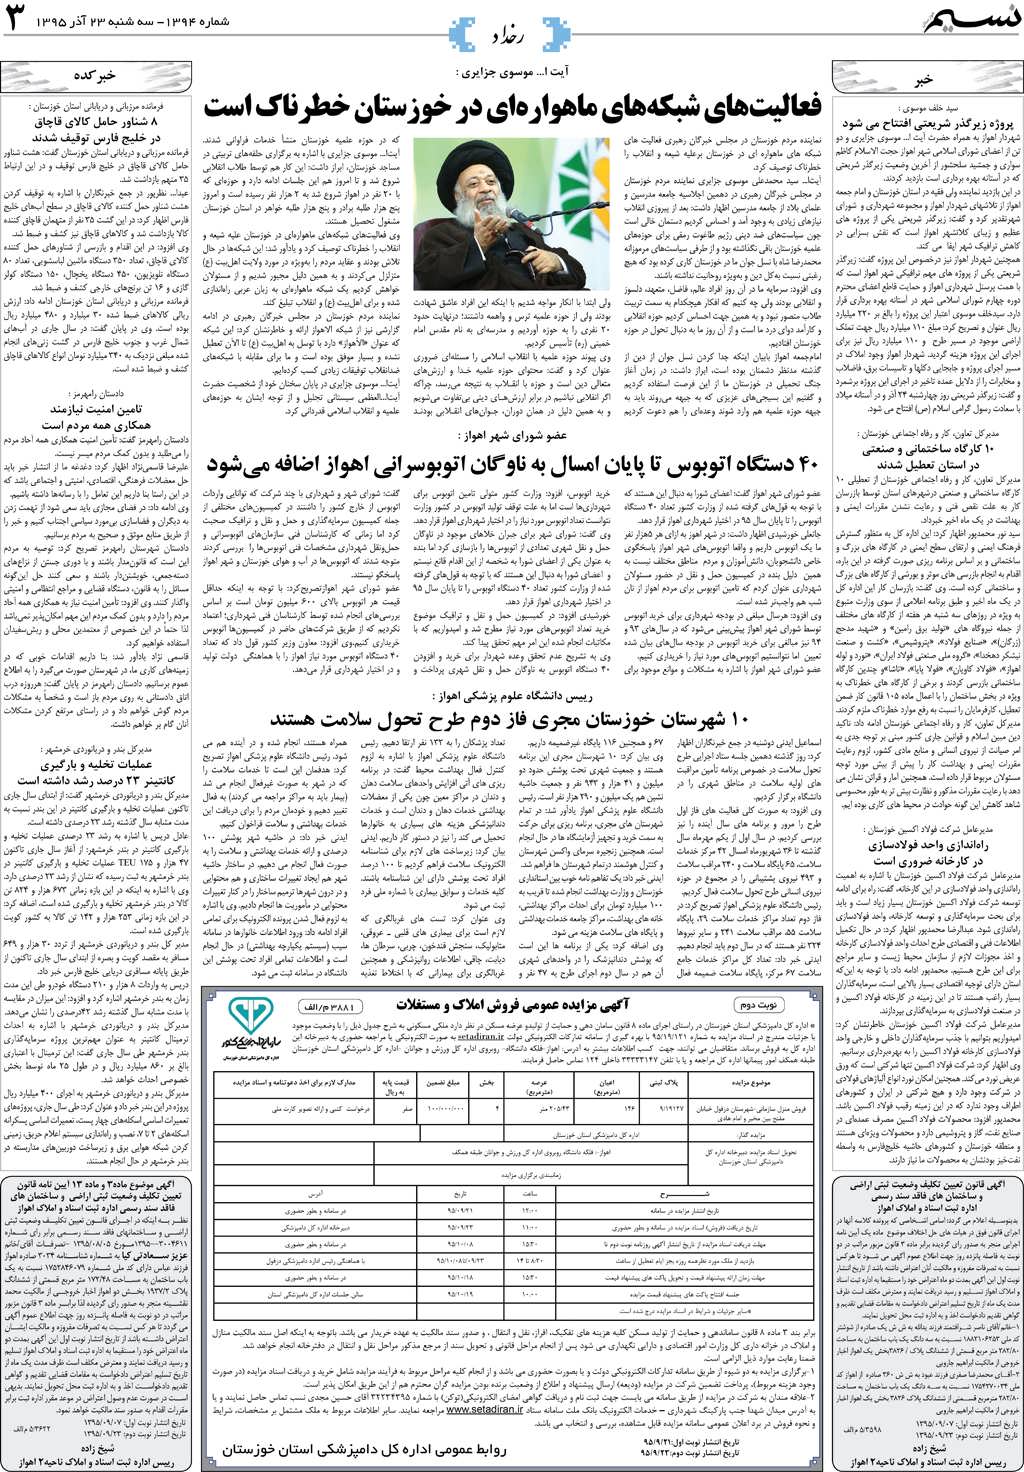 صفحه رخداد روزنامه نسیم شماره 1394